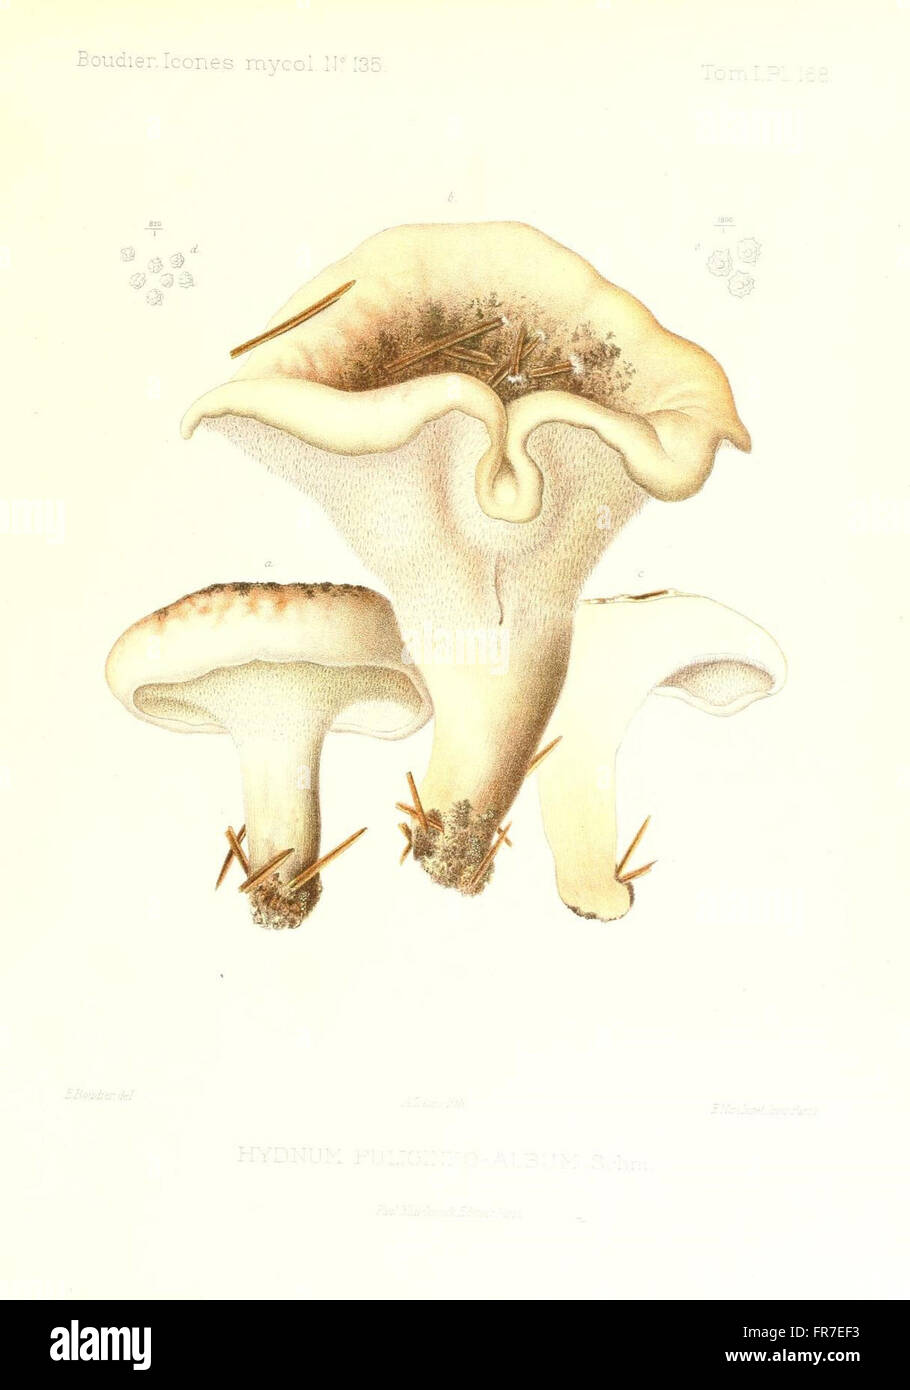 Icones mycologicC3A6, ou Iconographie des champignons de France principalement Discomycetes (Pl. 168) Stock Photo